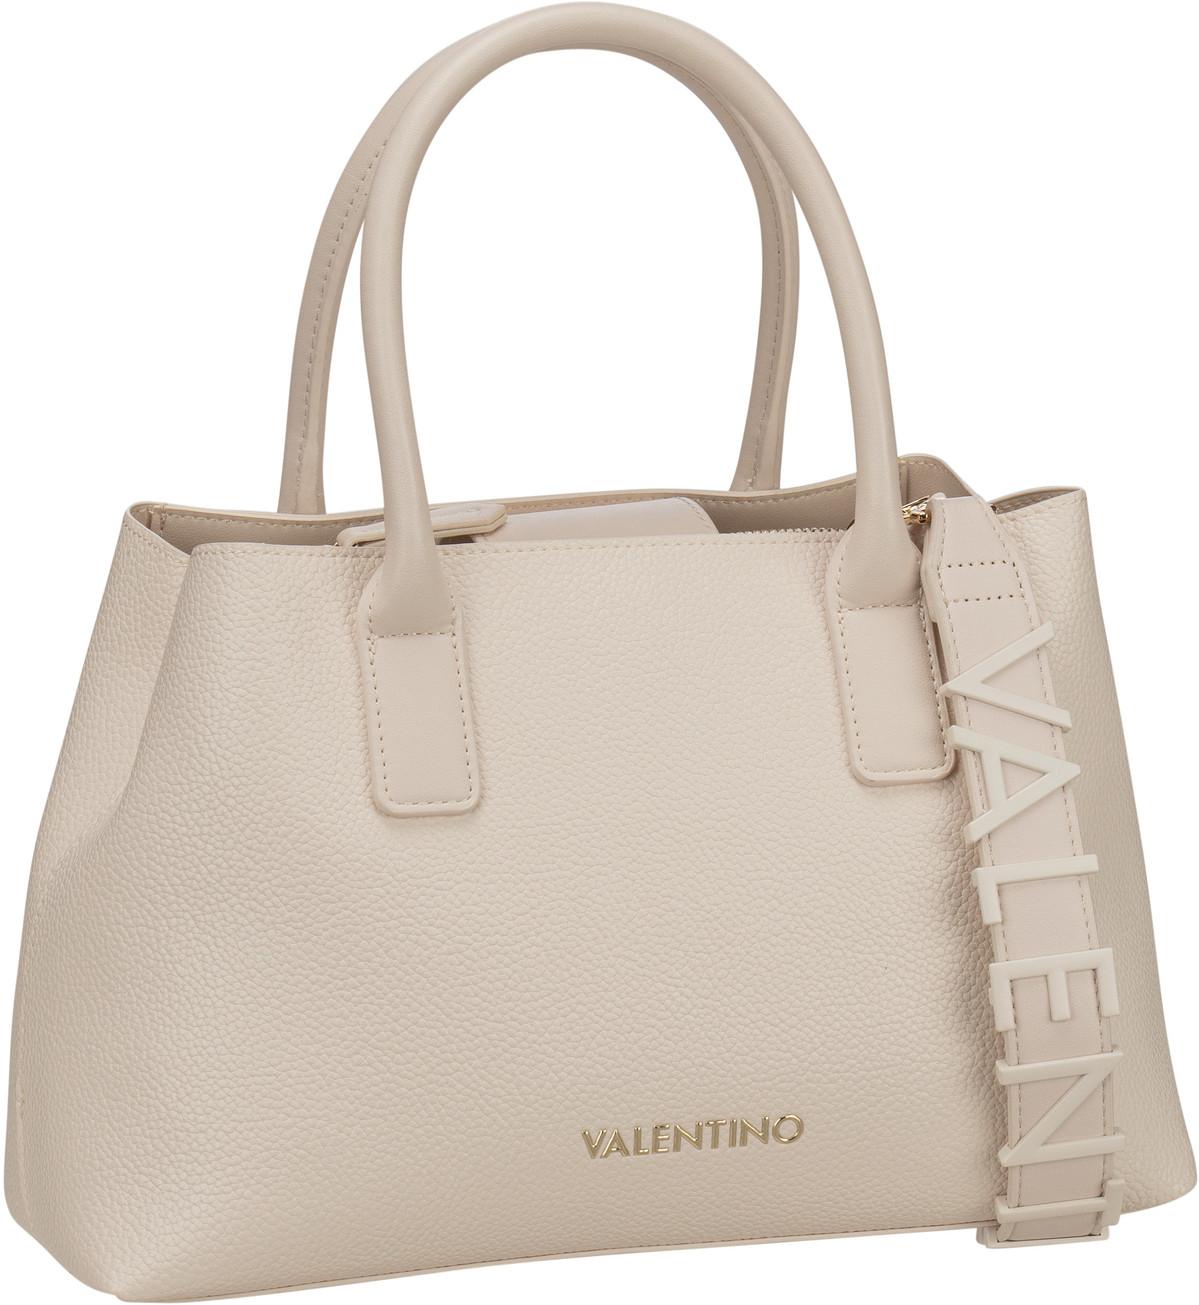 Valentino Seychelles Pretty Bag M01 - Off White